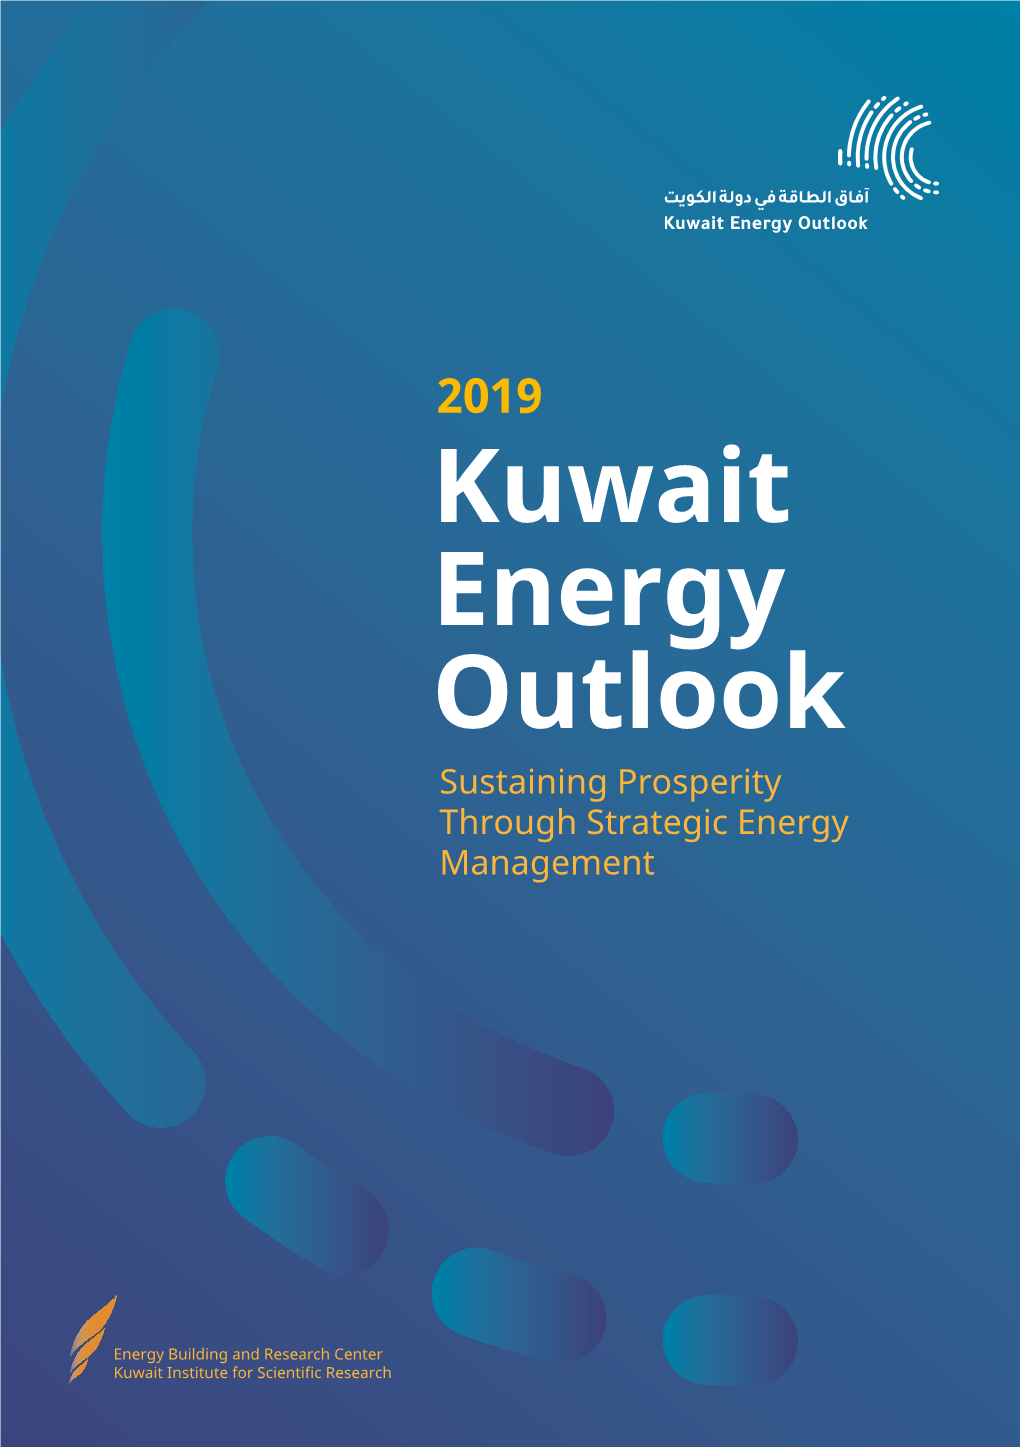 Kuwait Energy Outlook Sustaining Prosperity Through Strategic Energy Management